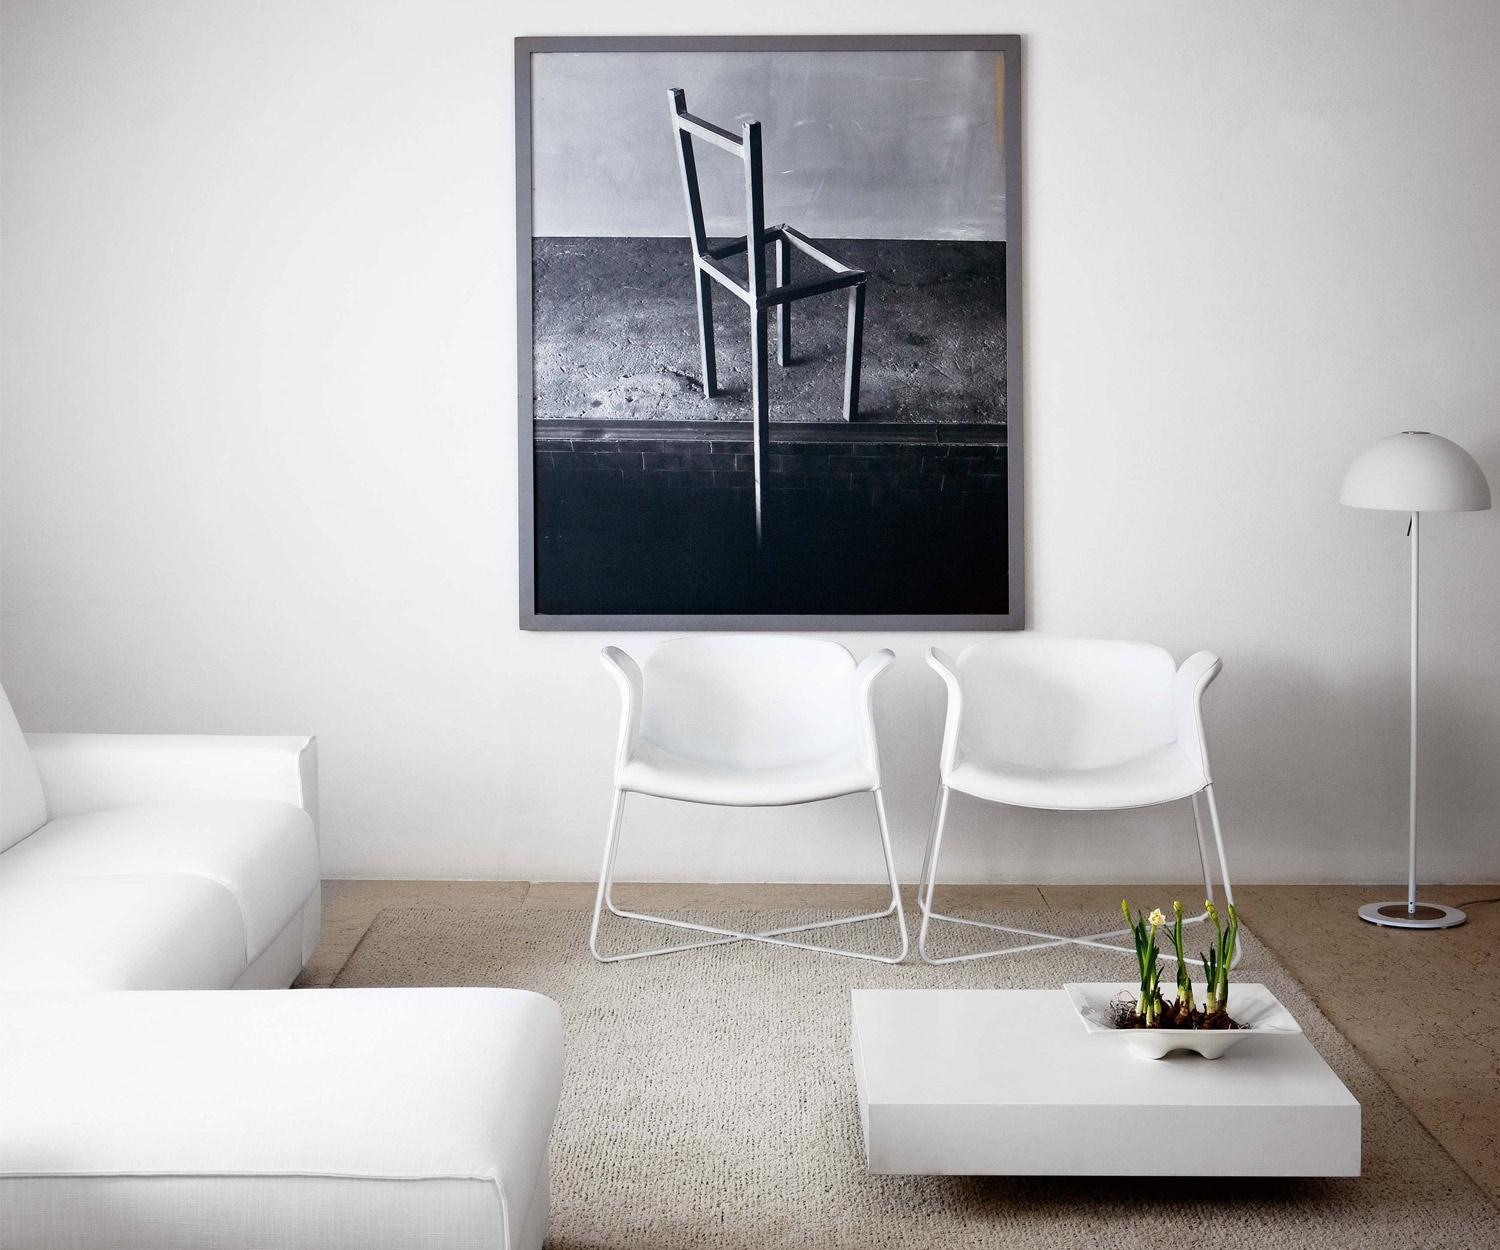 Design Couchtisch Schatten #stuhl #couchtisch #wohnzimmer #tisch ©Livarea.de